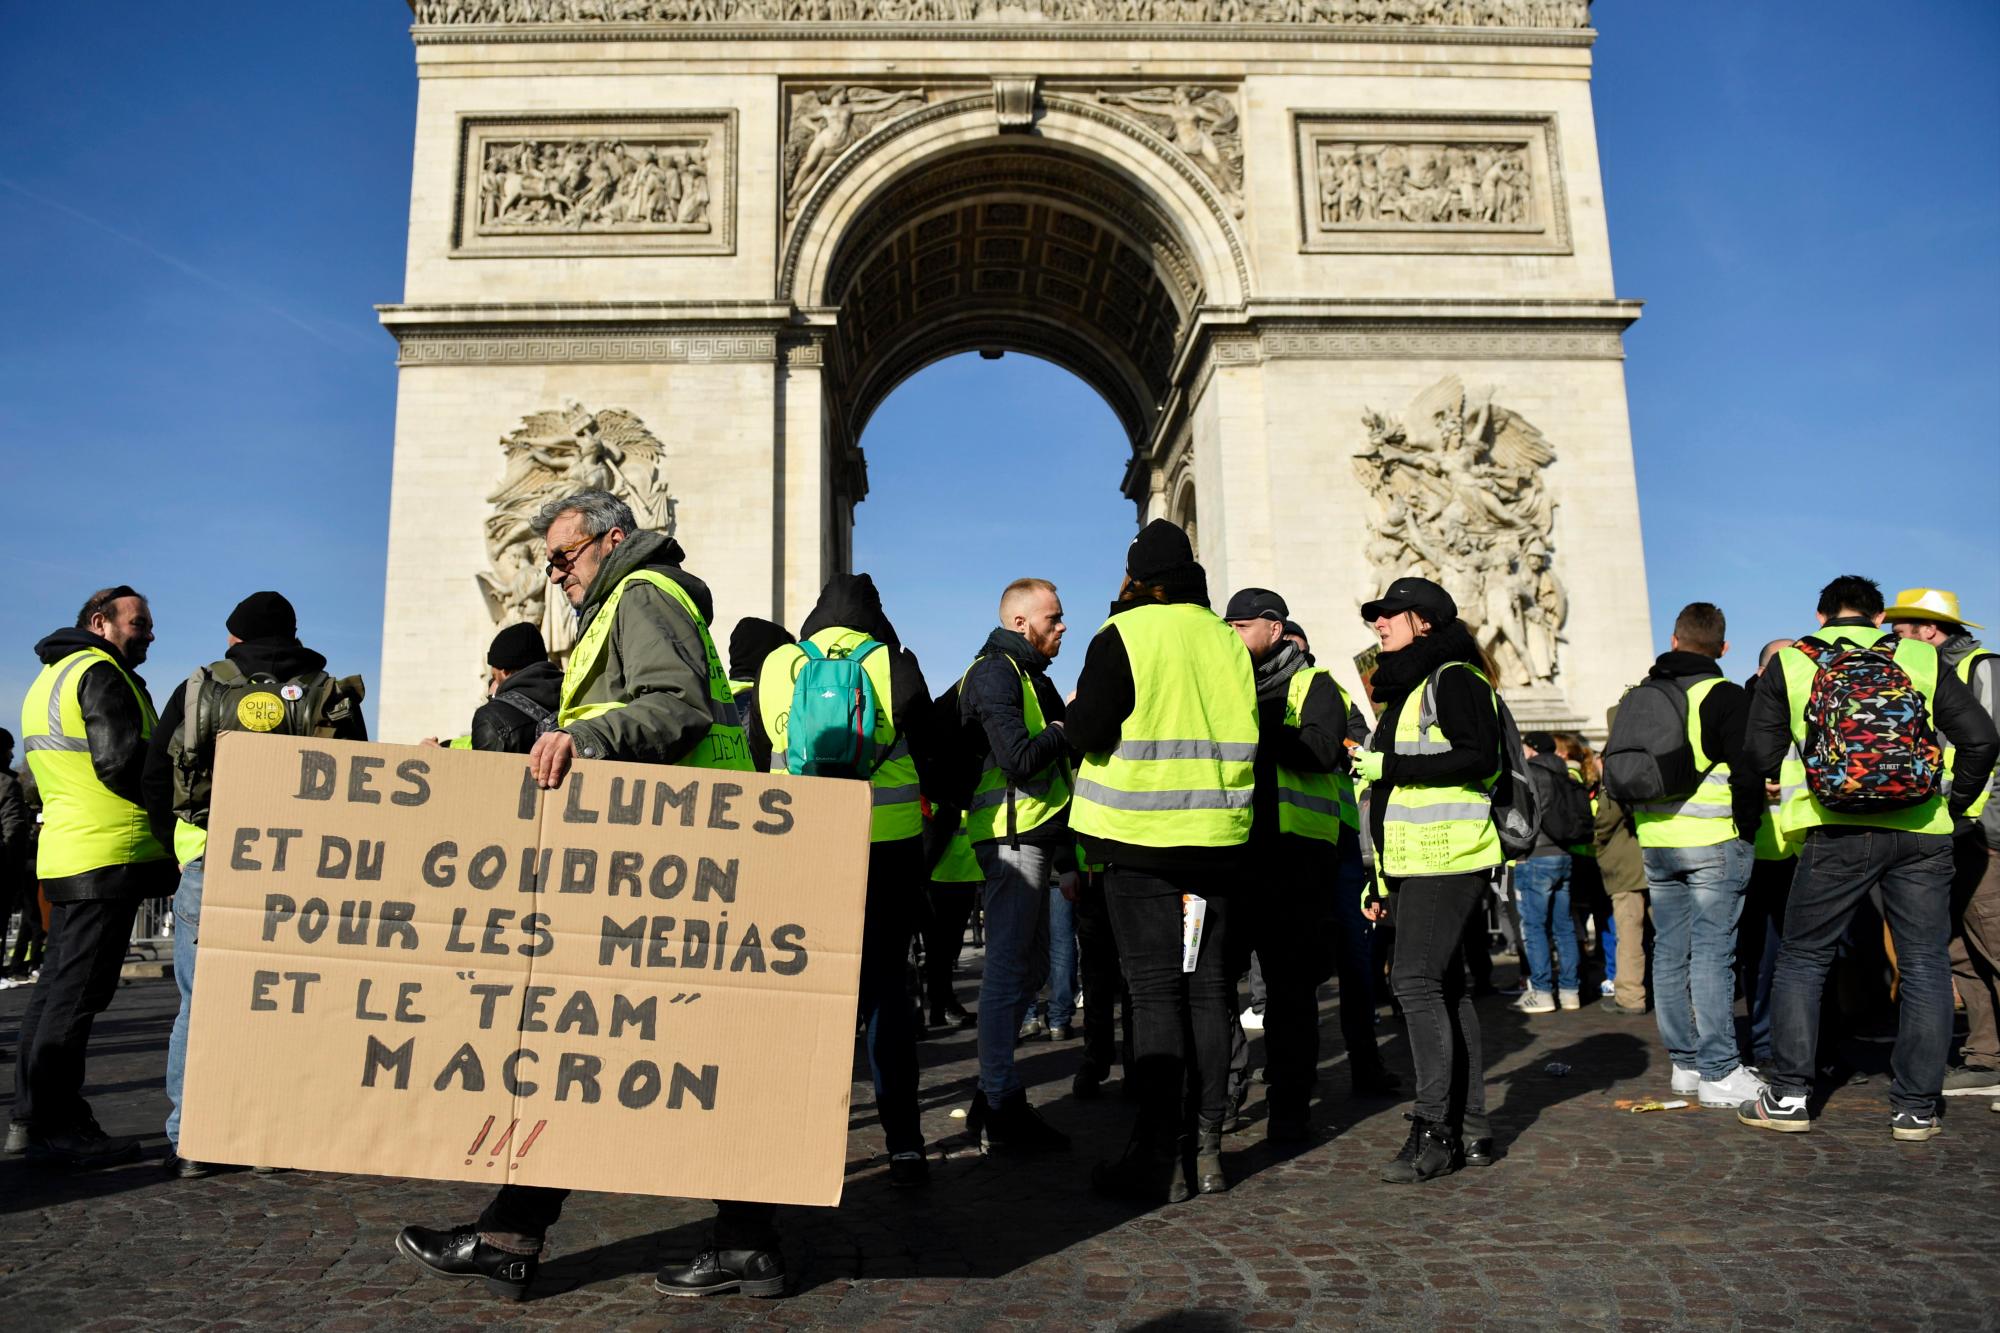 París (Francia), 16/02/2019.- Manifestantes con un cartel que dice: ‘Caminando y amontonando a los medios de comunicación y al equipo Macron’ del movimiento ‘Gilets Jaunes’ (Chalecos amarillos) se reúnen en la avenida de los Campos Elíseos, cerca de Arc de Tiomphe durante la manifestación del ‘Acto XIV’ (la 14a protesta nacional consecutiva en un sábado) en París, Francia, el 16 de febrero de 2019. El llamado ‘Gilets Jaunes’ es un movimiento de protesta de base con partidarios de una amplia gama de espectro político, que originalmente comenzó con una protesta en todo el país a fines de 2018 contra los altos precios del combustible.